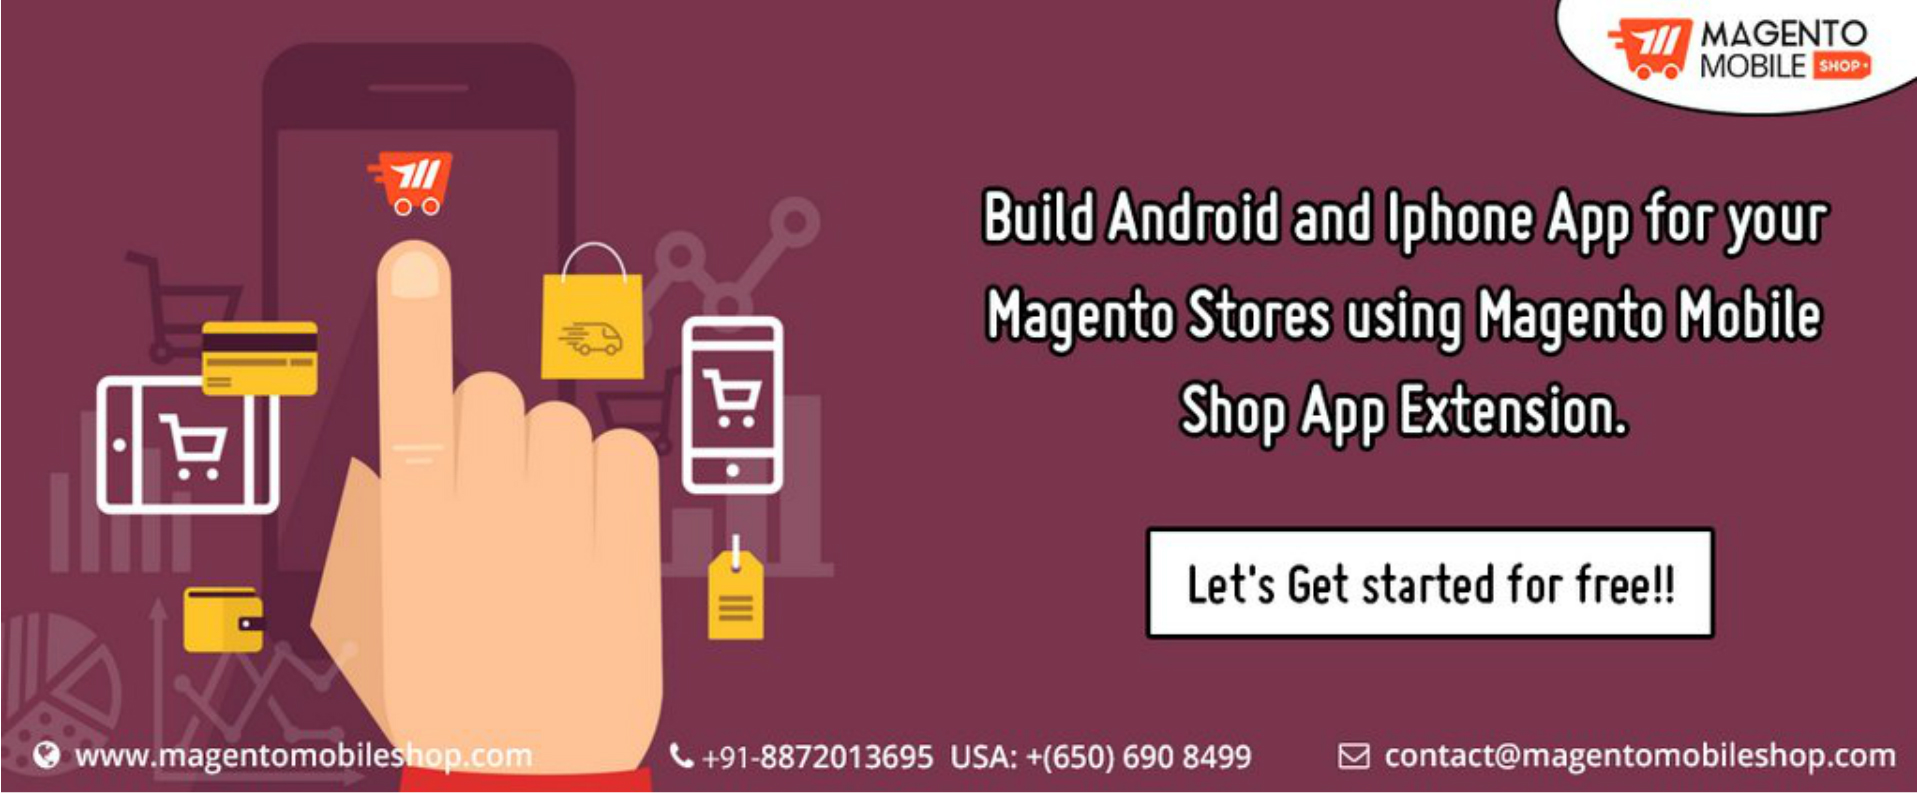 Magento Mobile App Builder -  by magentomobile